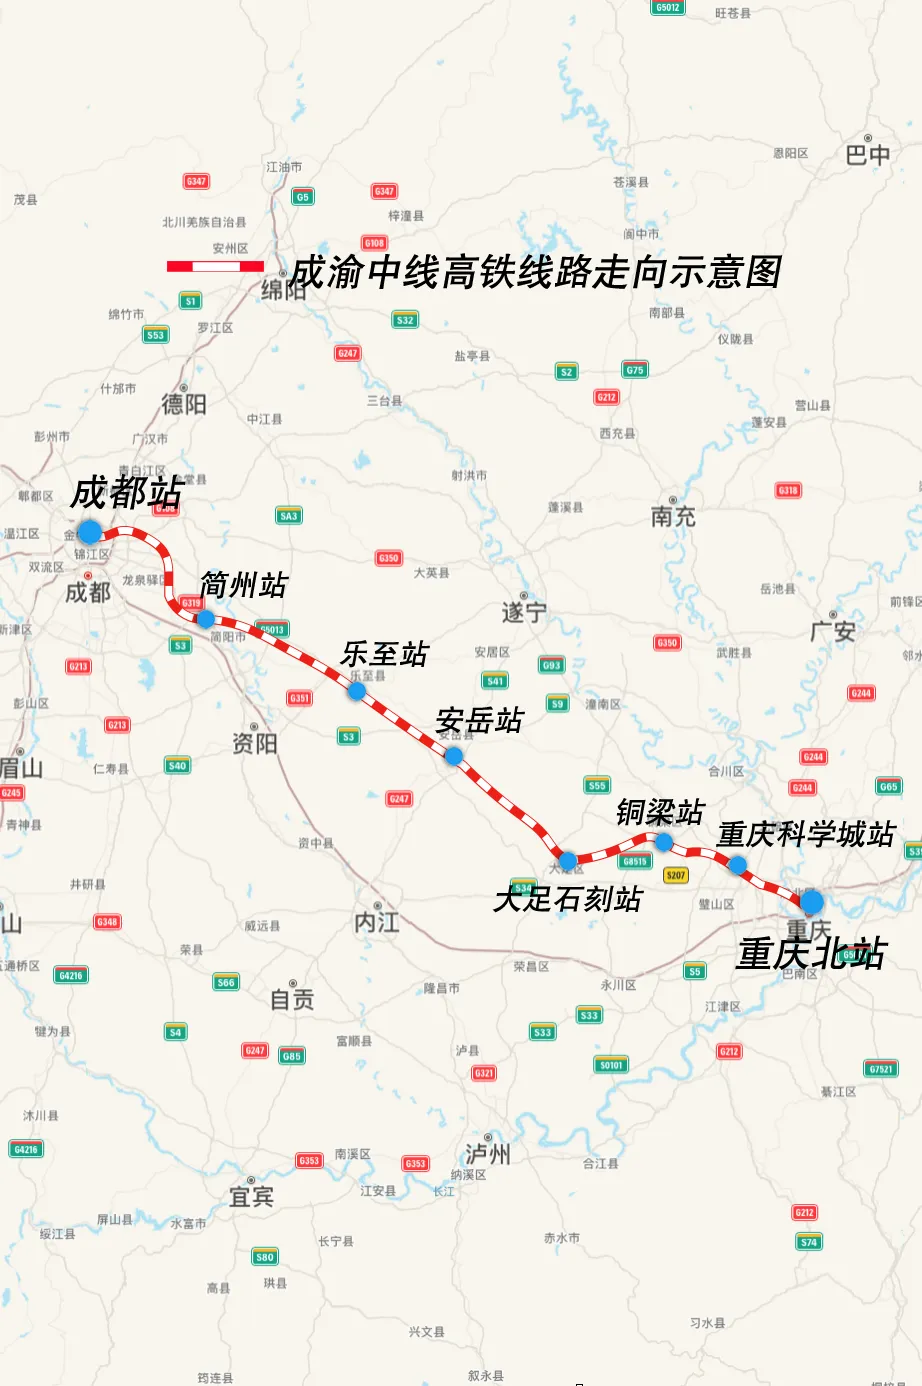 预计线路将于2027年底建成通车,届时,从成都到重庆北站的通勤时间,将